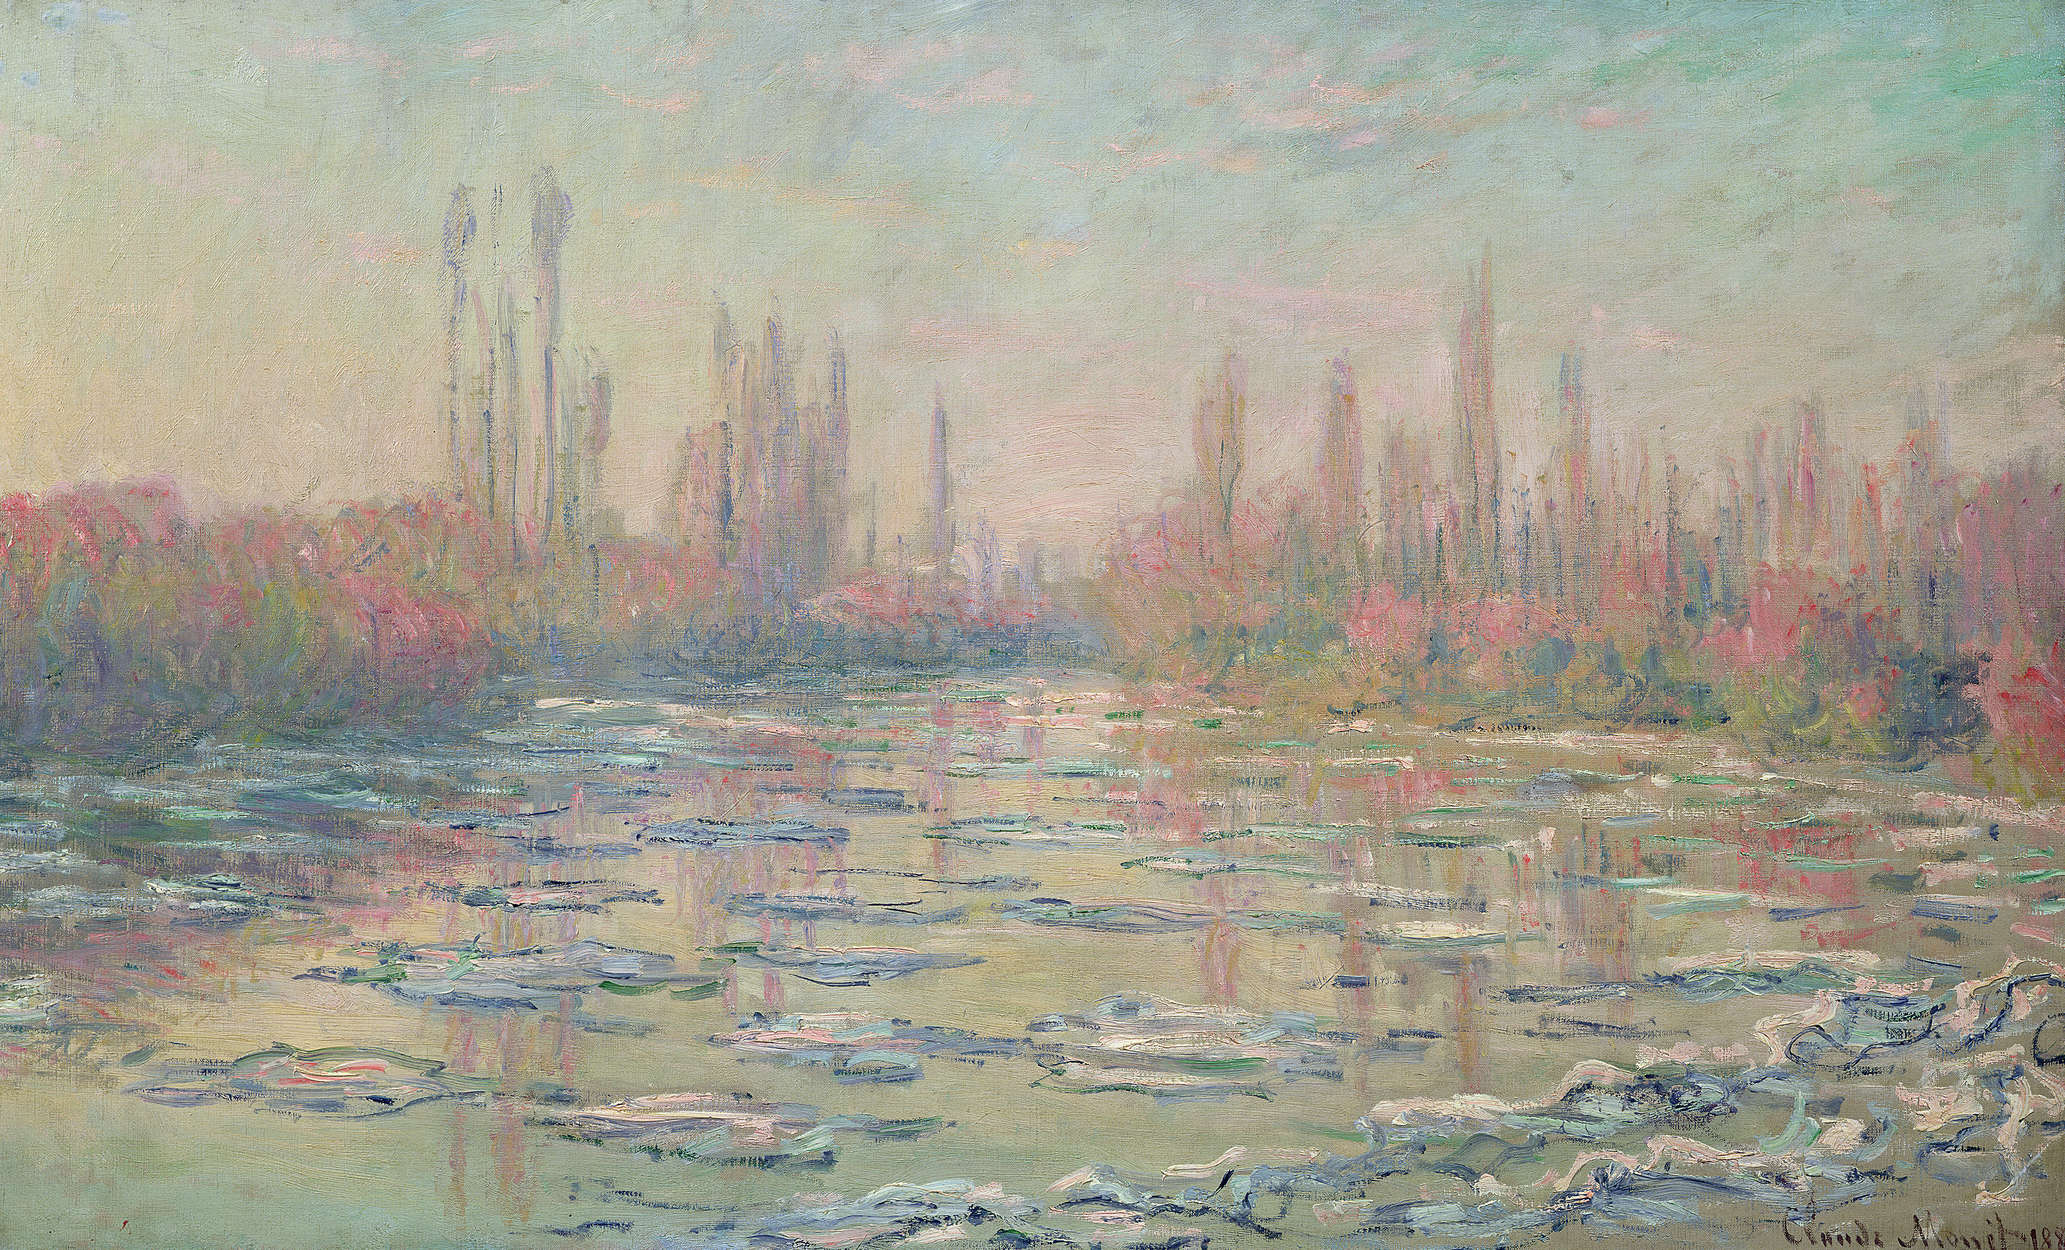             Papier peint panoramique "Le dégel de la Seine près de Vétheuil" de Claude Monet
        